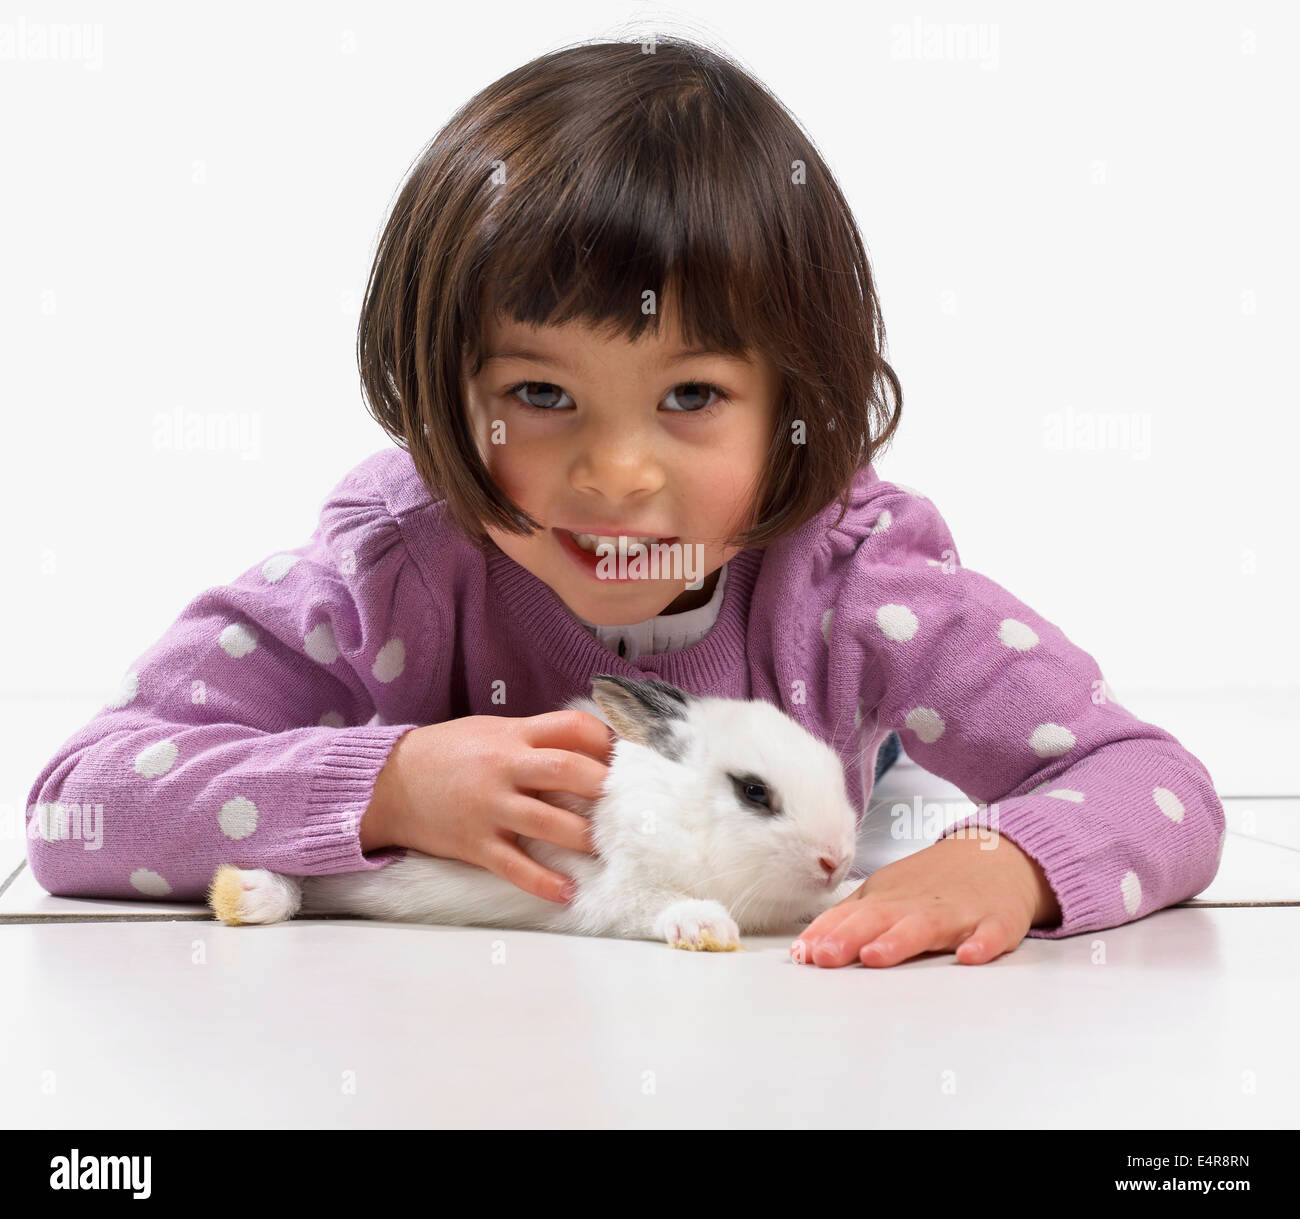 Fille (2 ans) avec bébé lapin blanc Banque D'Images